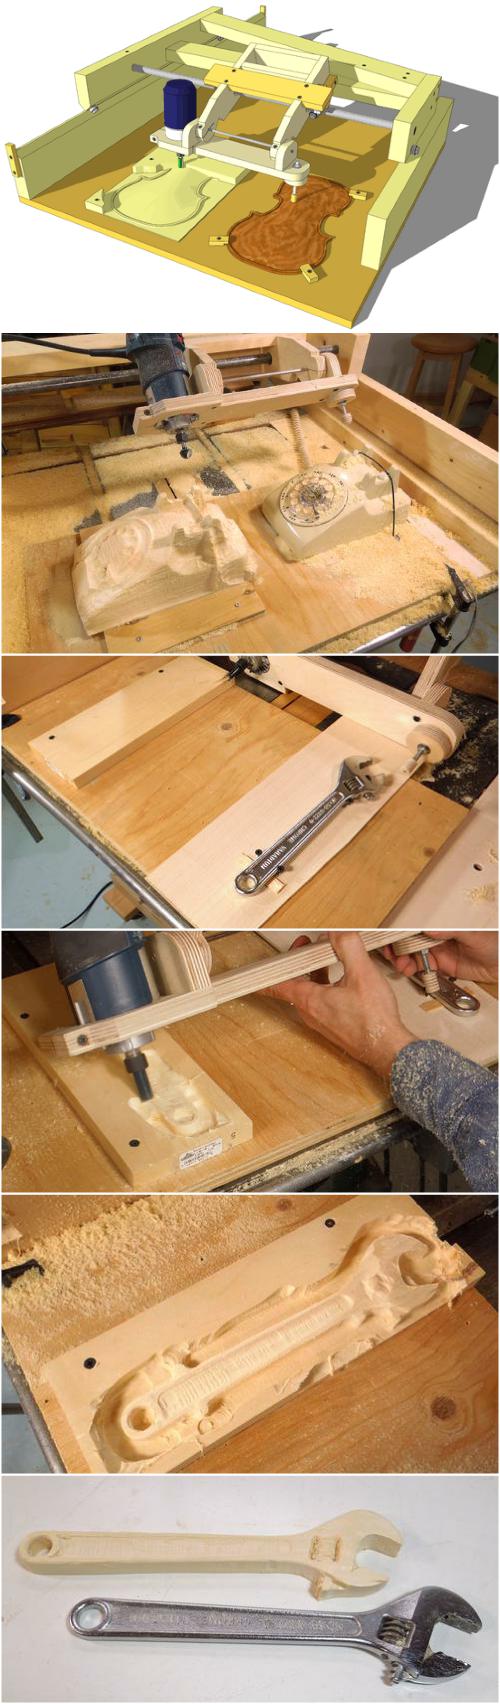 每当去杂货市场配钥匙时都会感叹配钥匙机器的神奇，仿佛变魔术一般，通过一个雕刻钻头和一个复制头，一会儿功夫就可以复制出一把一模一样的钥匙出来。擅长木工的加拿大工程师Matthias Wandel设计了一款类似的装置-刨子复制雕刻机，这个木制框架可以让你用手刨复制出一个木制3D模型，功能相当于一个缩放仪。